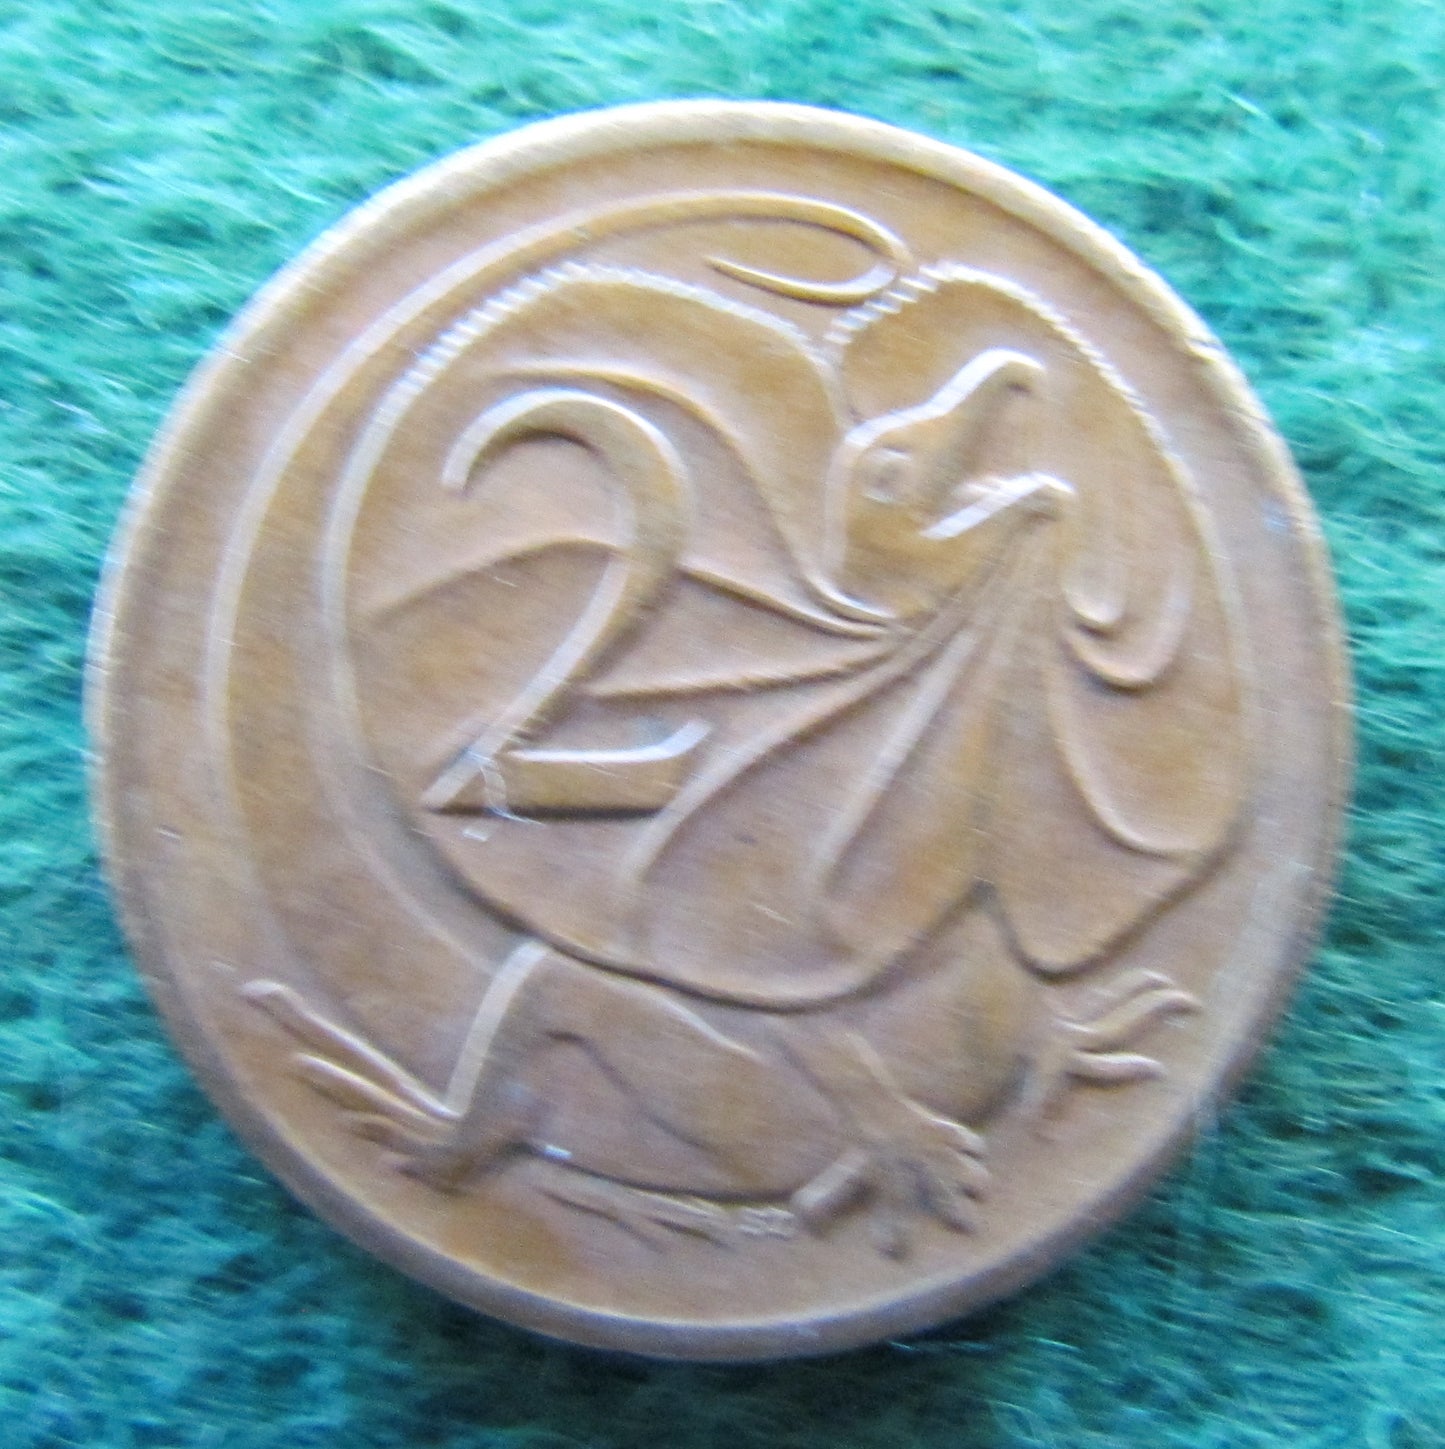 Australian 1969 2 Cent Queen Elizabeth II Coin